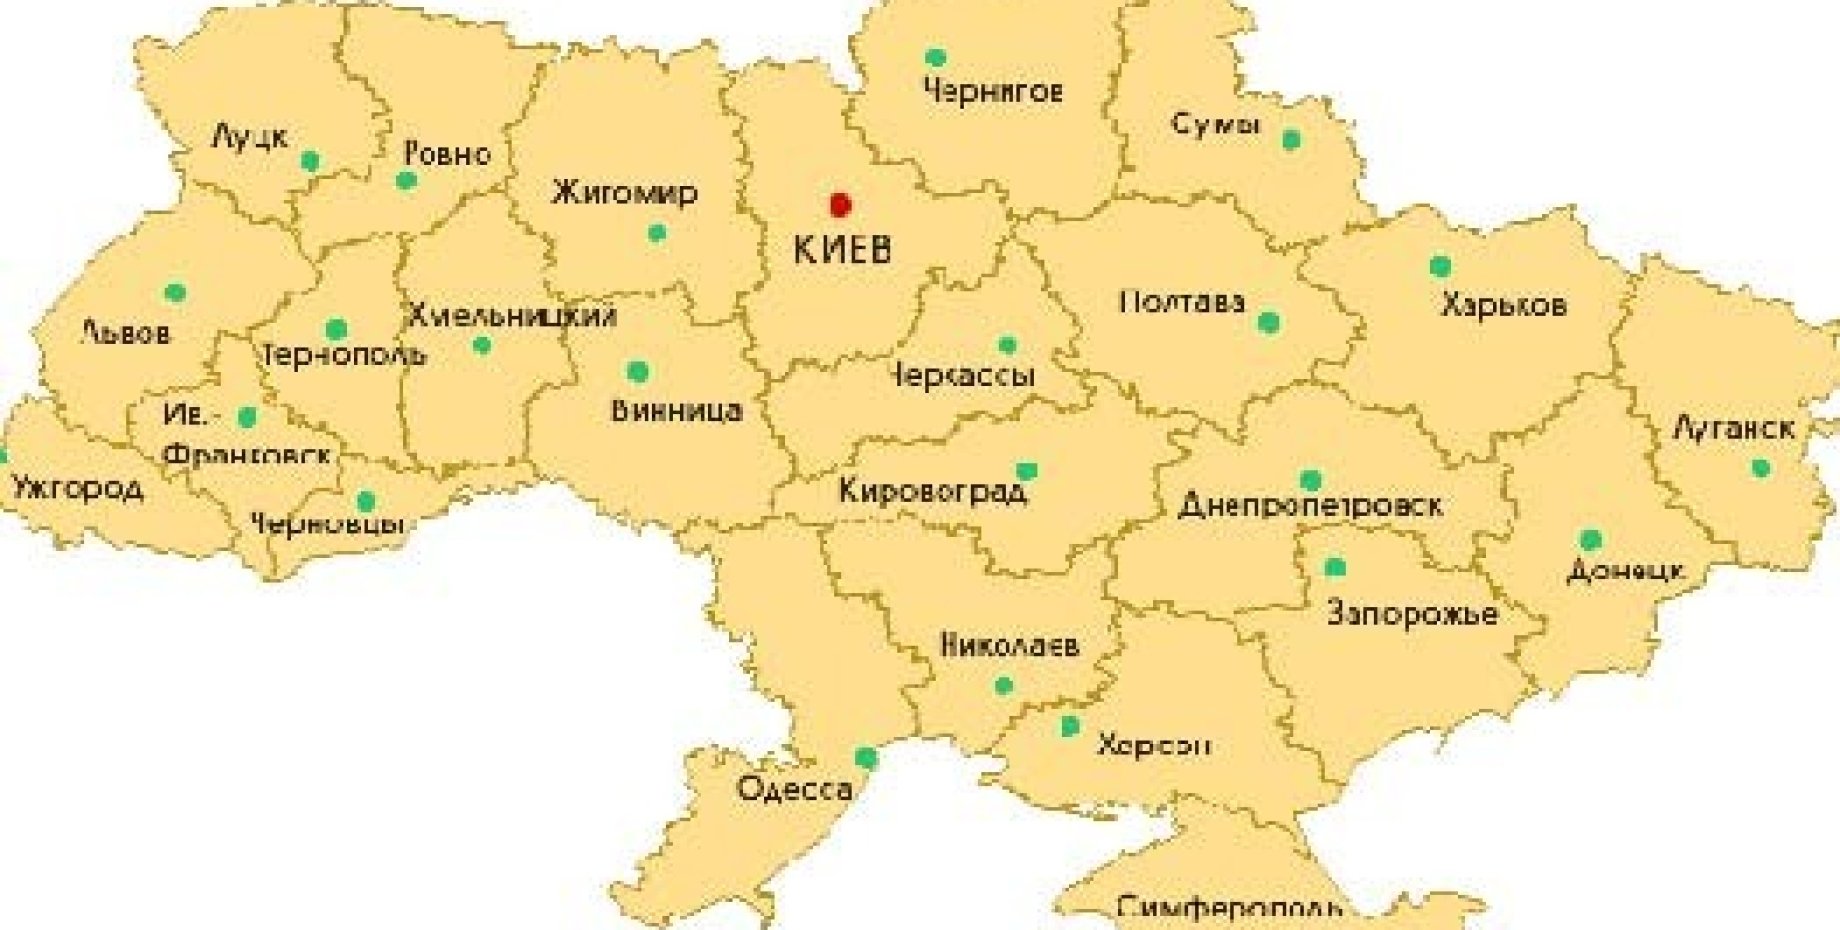 Показало карту районов украины. Карта Украины по областям и городам. Карта Украины с областями. Карта Украины с городами. Карта Украины до 2014 года с областями.